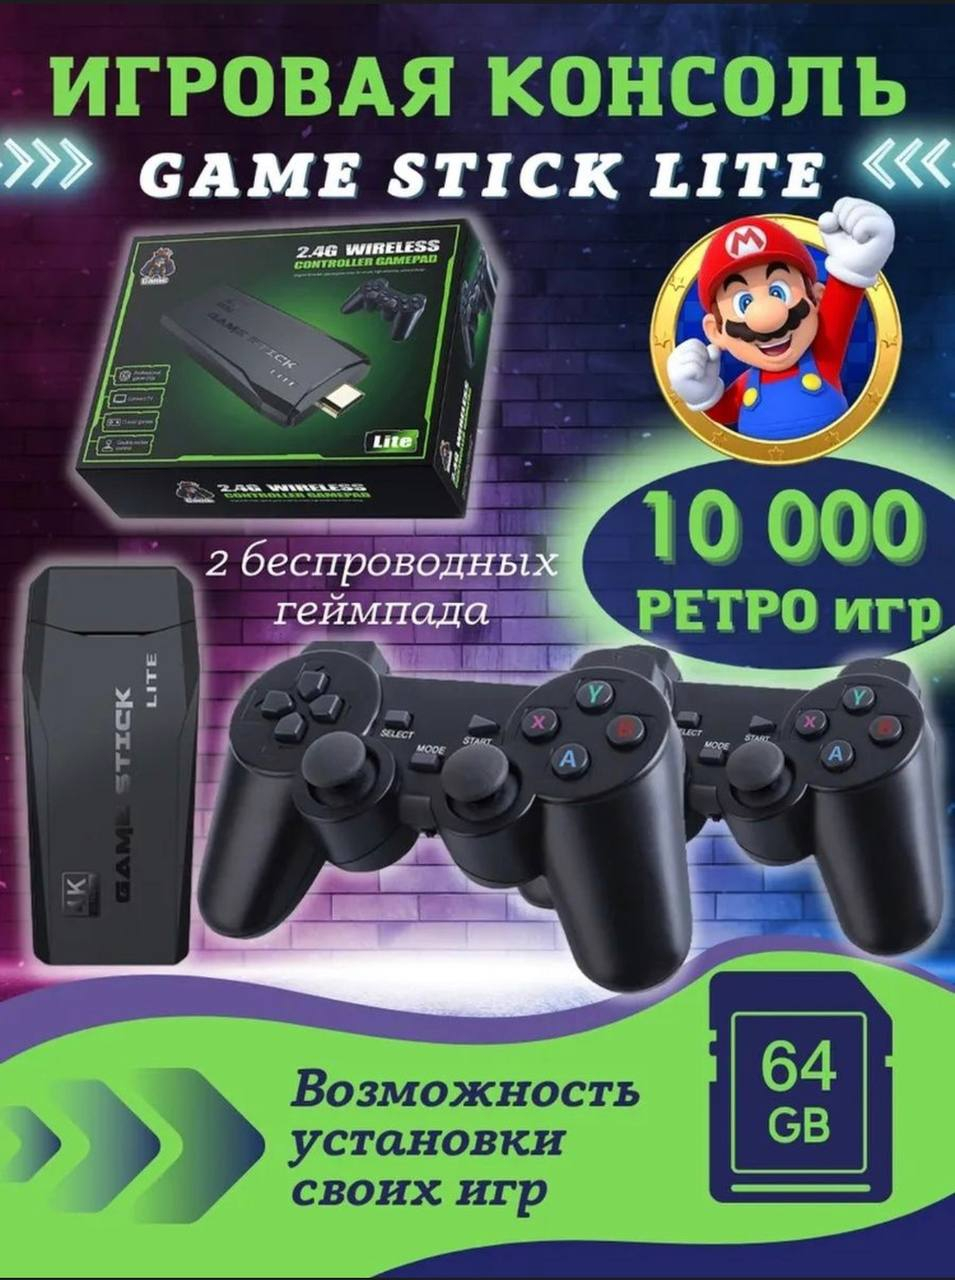 Game stick игровая консоль. Геймс стик приставка игровая. Игровая приставка game Stick 64 GB. Портативная игровая приставка game Stick Lite 64. Игры у приставки гейм стик Лайт.